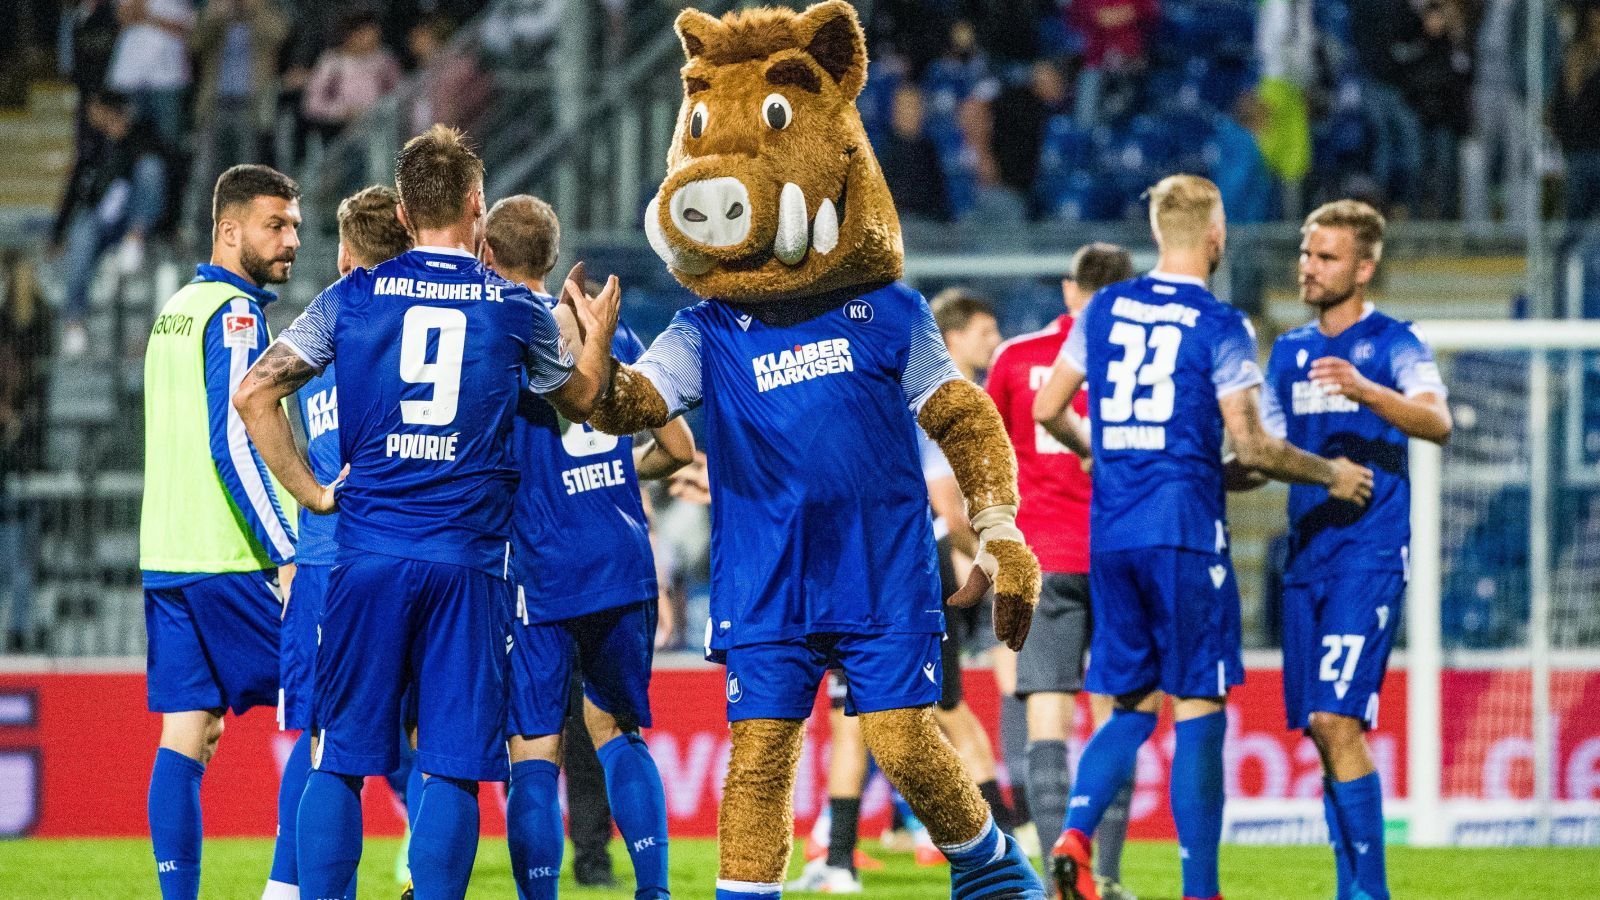 
                <strong>Karlsruher SC</strong><br>
                Der Karlsruher SC trägt seine Heimspiele im Stadion am Wildpark aus, das offizielle Maskottchen ist das Wildschwein Willi Wildpark. Da kommt man wohl kaum dran vorbei, auch die Franchise danach zu benennen: Karlsruhe Boars.
              